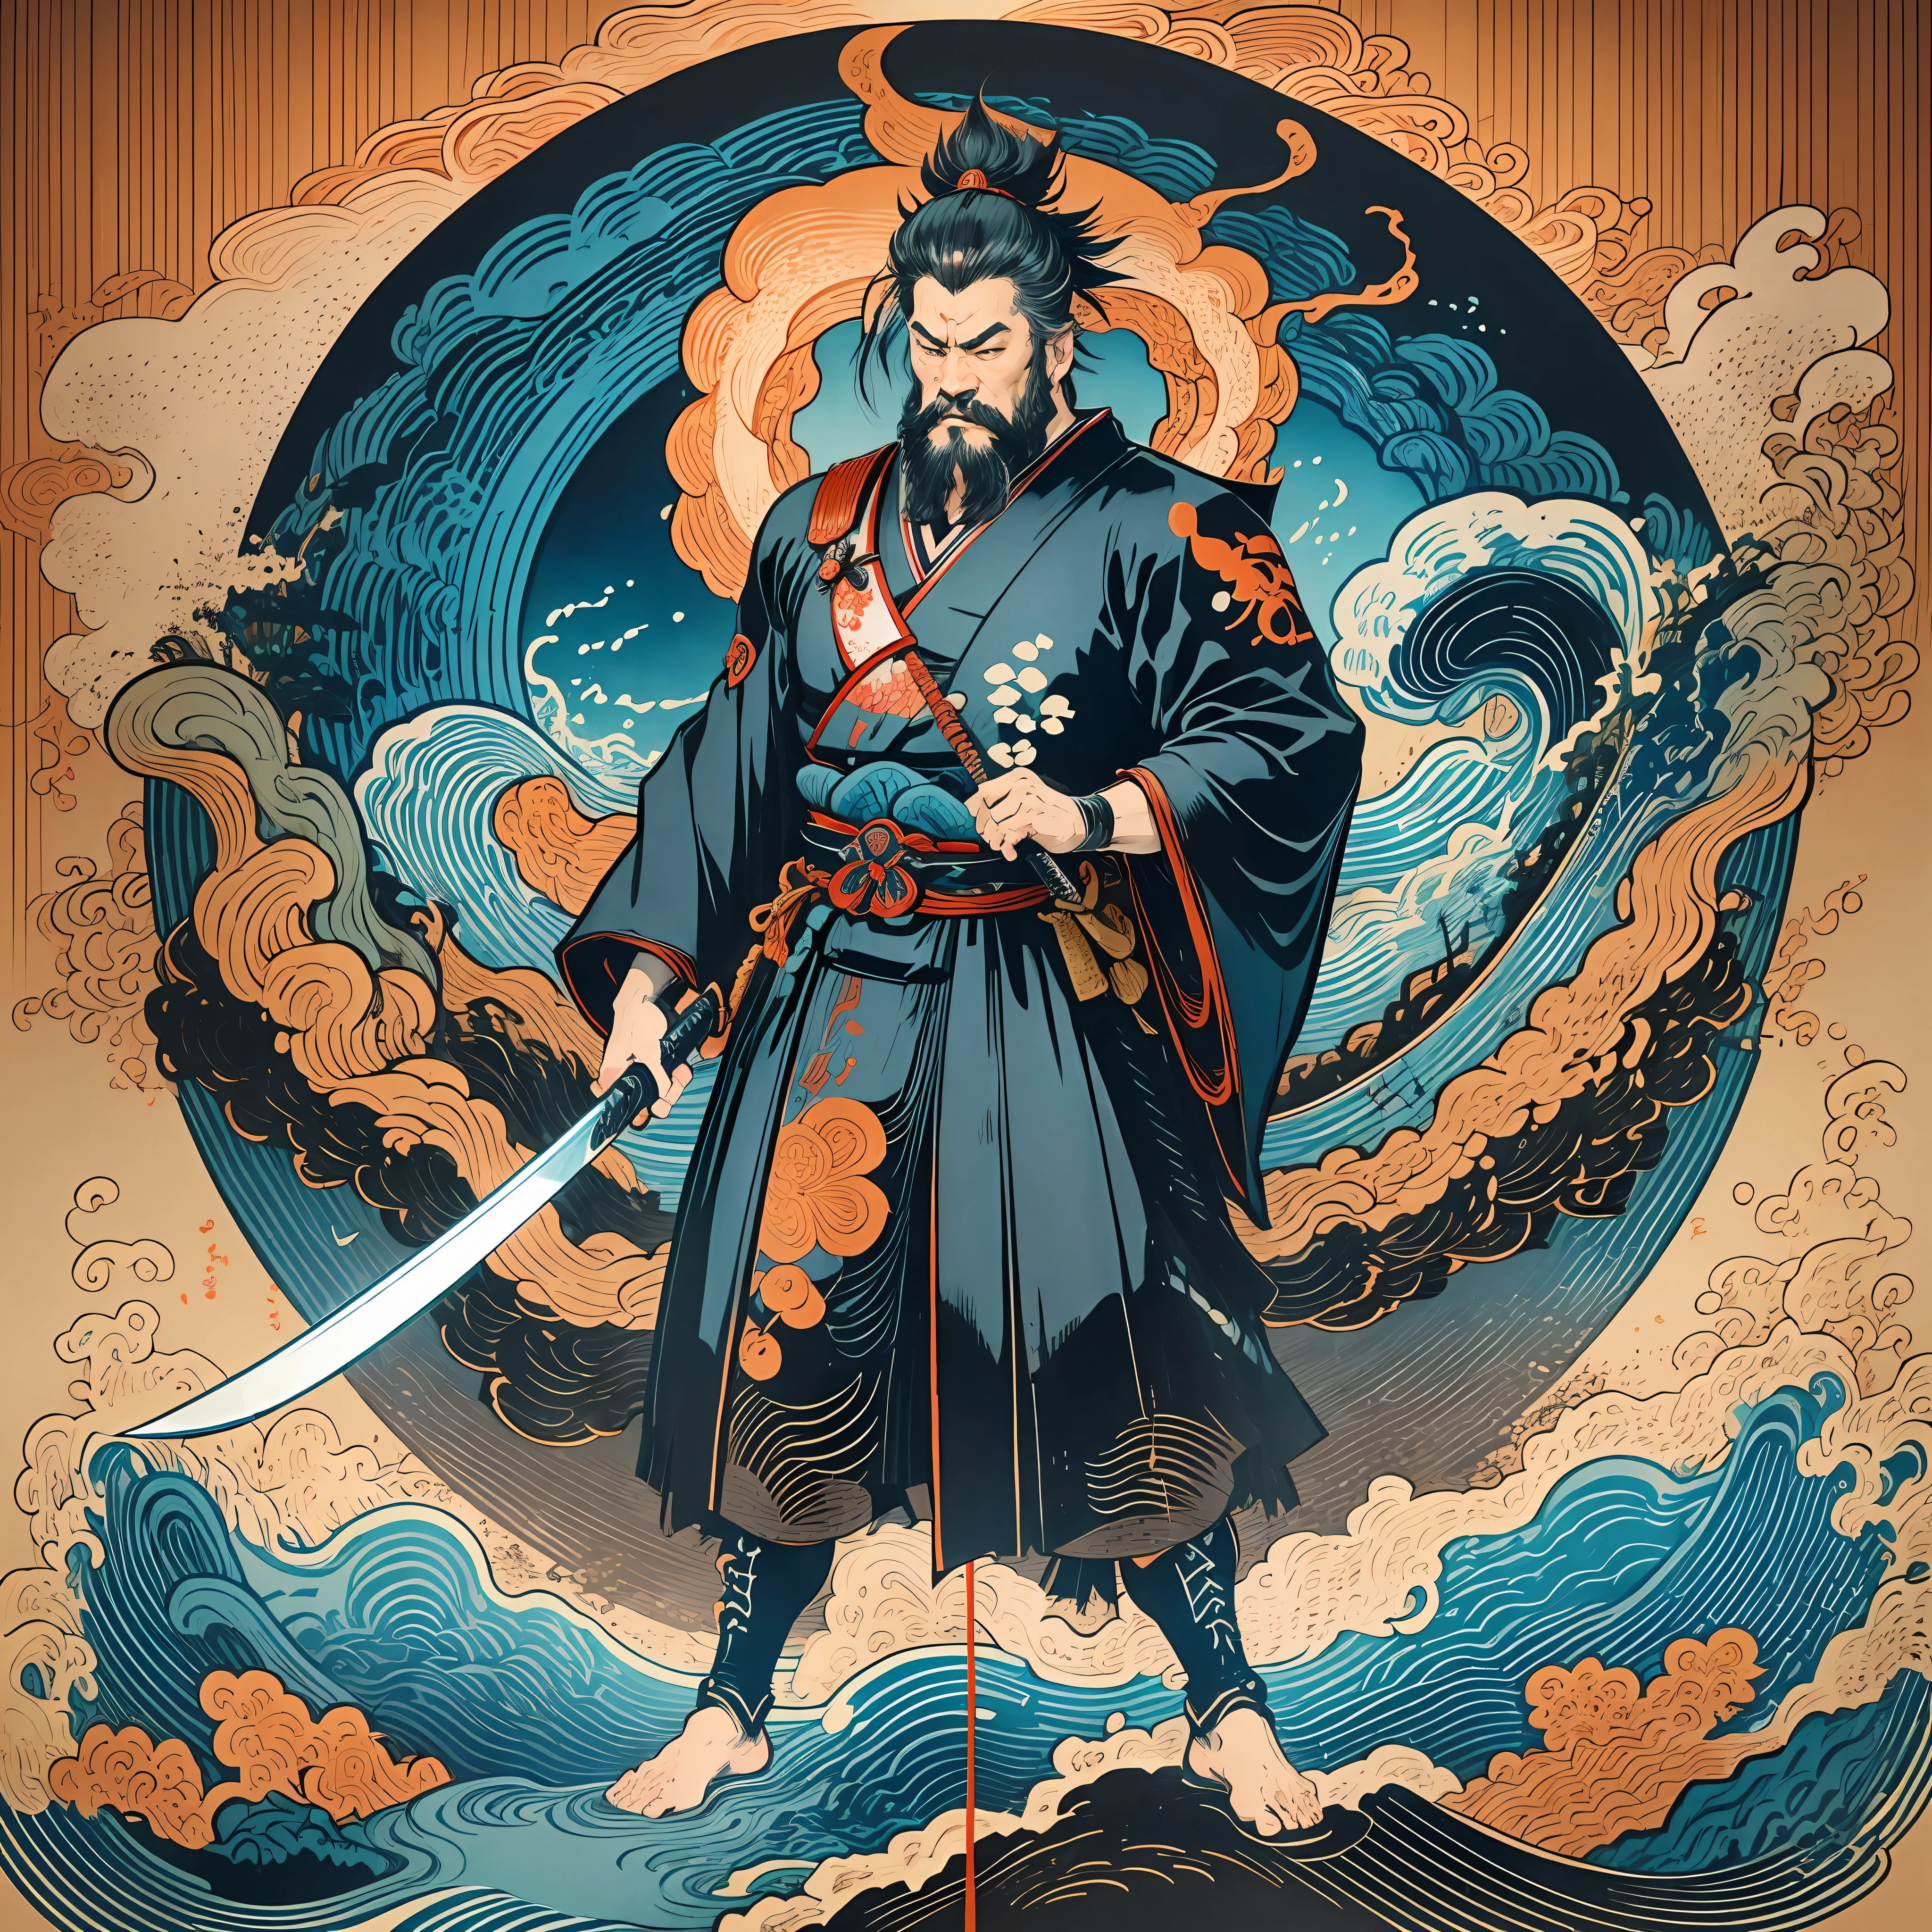 Es una pintura de cuerpo entero con colores naturales con dibujos lineales al estilo Katsushika Hokusai.. El espadachín Miyamoto Musashi tiene un cuerpo grande como el de un hombre fuerte.. Samurái de Japón. Con una expresión de determinación digna pero varonil., se enfrenta a los espíritus malignos. Tiene el pelo corto negro y un pelo corto., barba recortada. La parte superior de su cuerpo está cubierta con un kimono negro y su hakama llega hasta las rodillas.. En su mano derecha sostiene una espada japonesa con una parte más larga.. en la más alta calidad, obra maestra de alta resolución estilo ukiyo-e relámpagos y llamas arremolinadas. Entre ellos, Miyamoto Musashi está de pie con la espalda recta., mirando al frente.